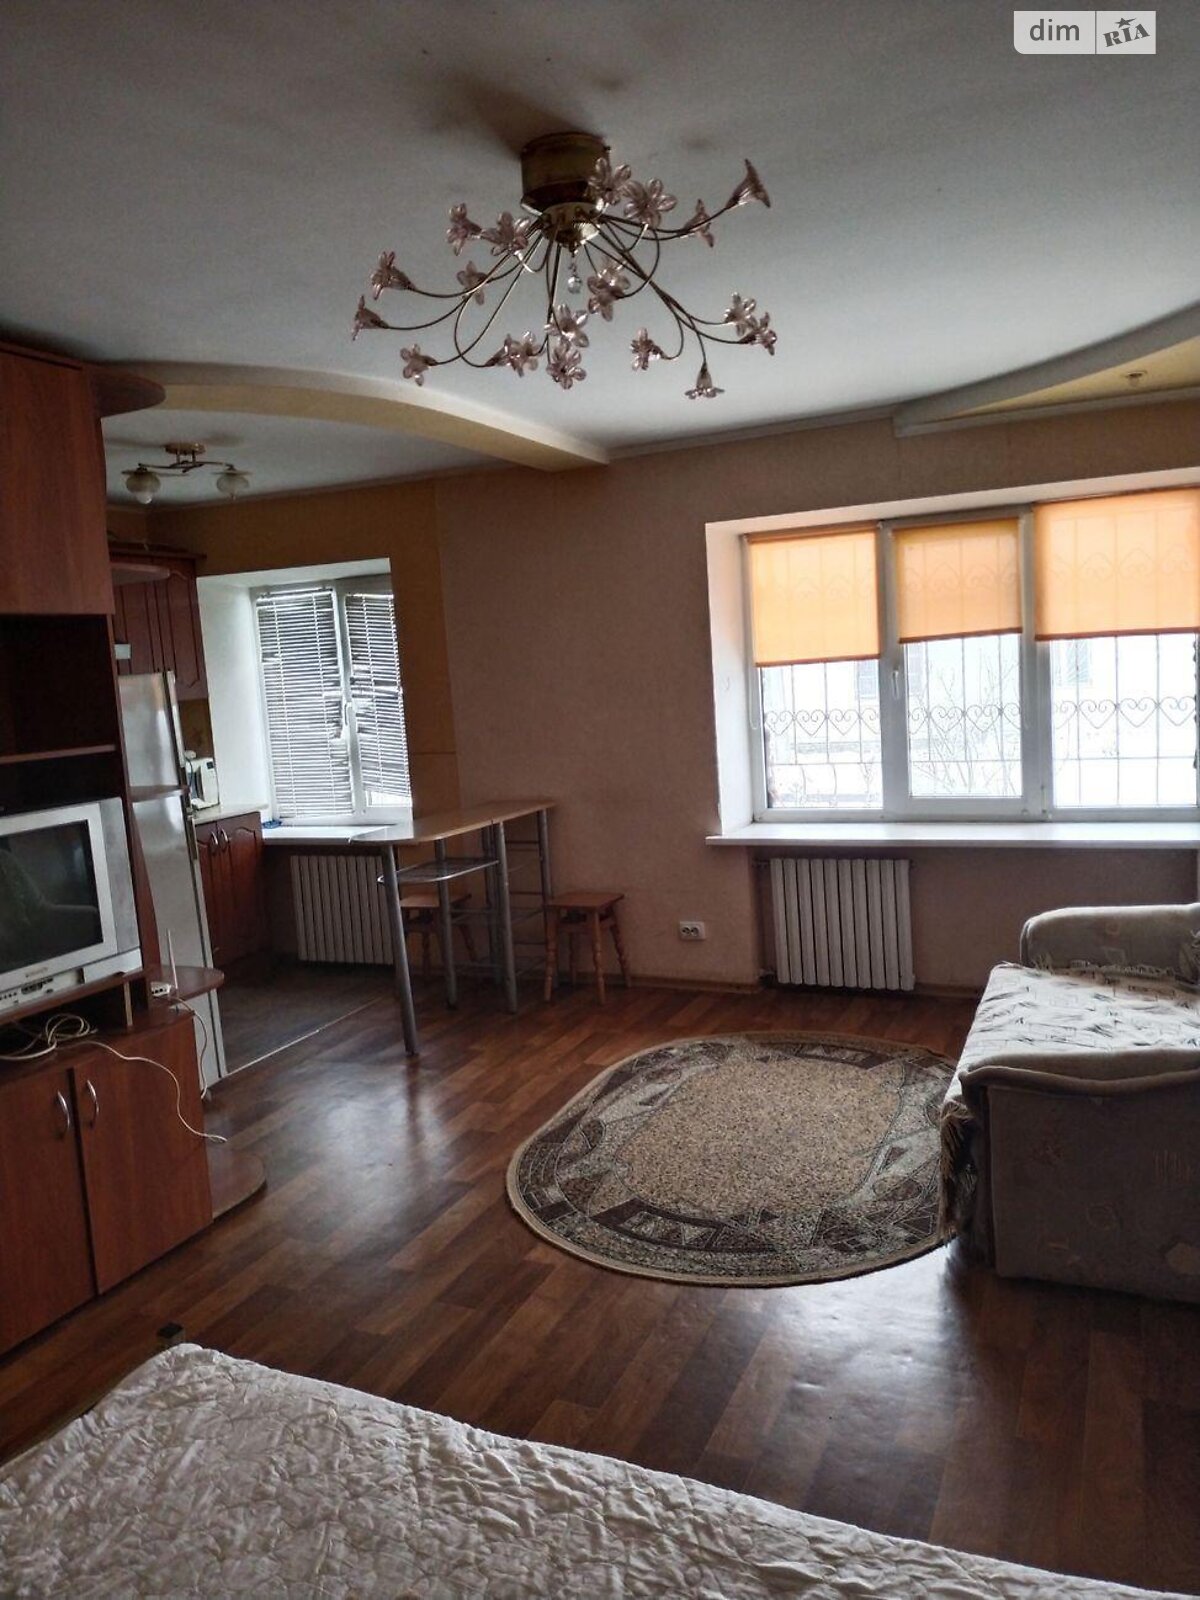 Продажа однокомнатной квартиры в Полтаве, на ул. Крамского 5, район 1-я гор.больница фото 1